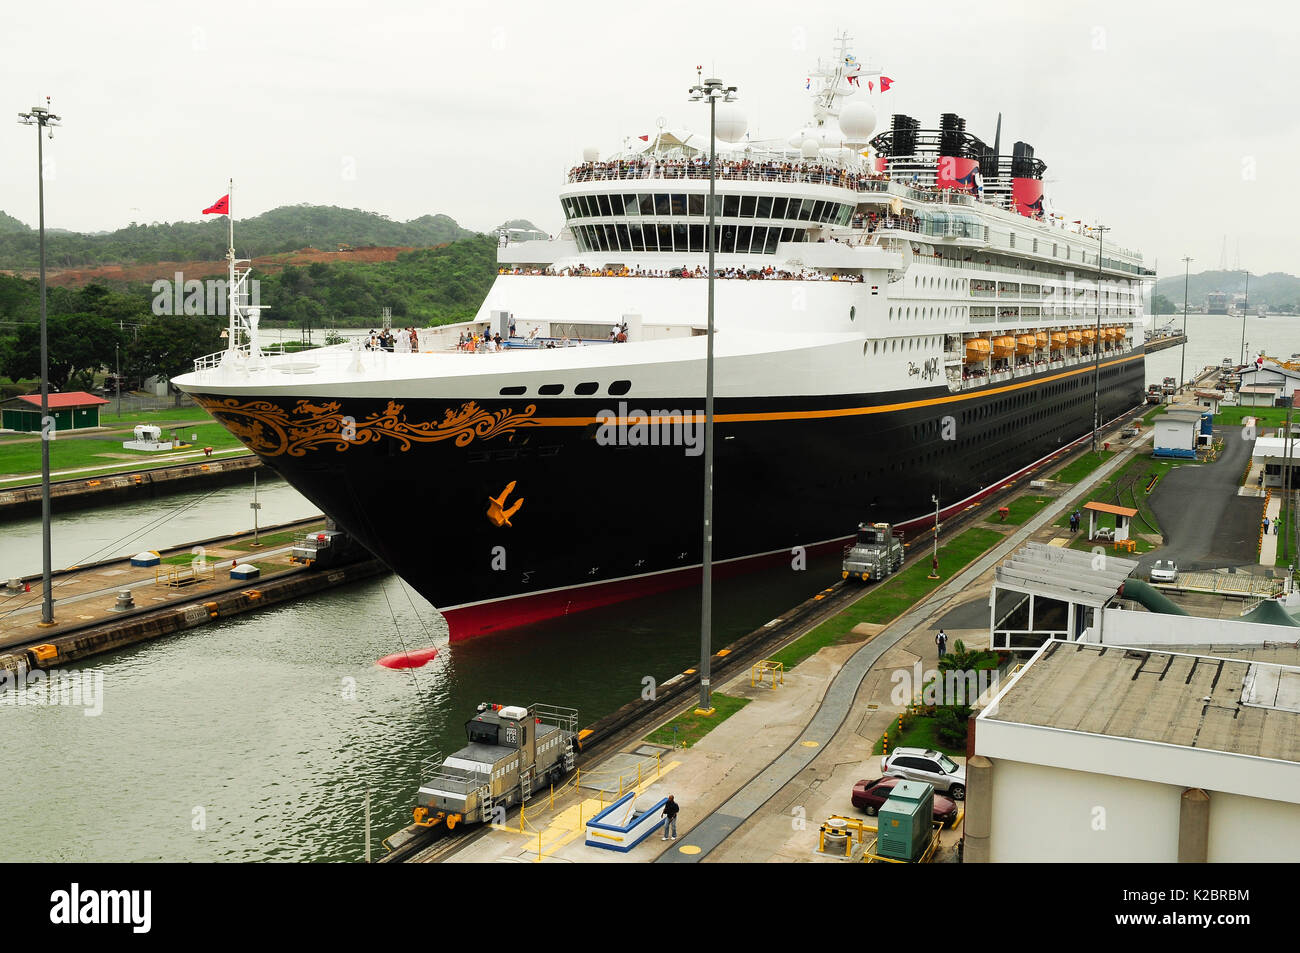 Grand navire de croisière en passant par le Canal de Panama, Panama. Mai 2008. Tous les non-usages de rédaction doivent être effacés individuellement. Banque D'Images